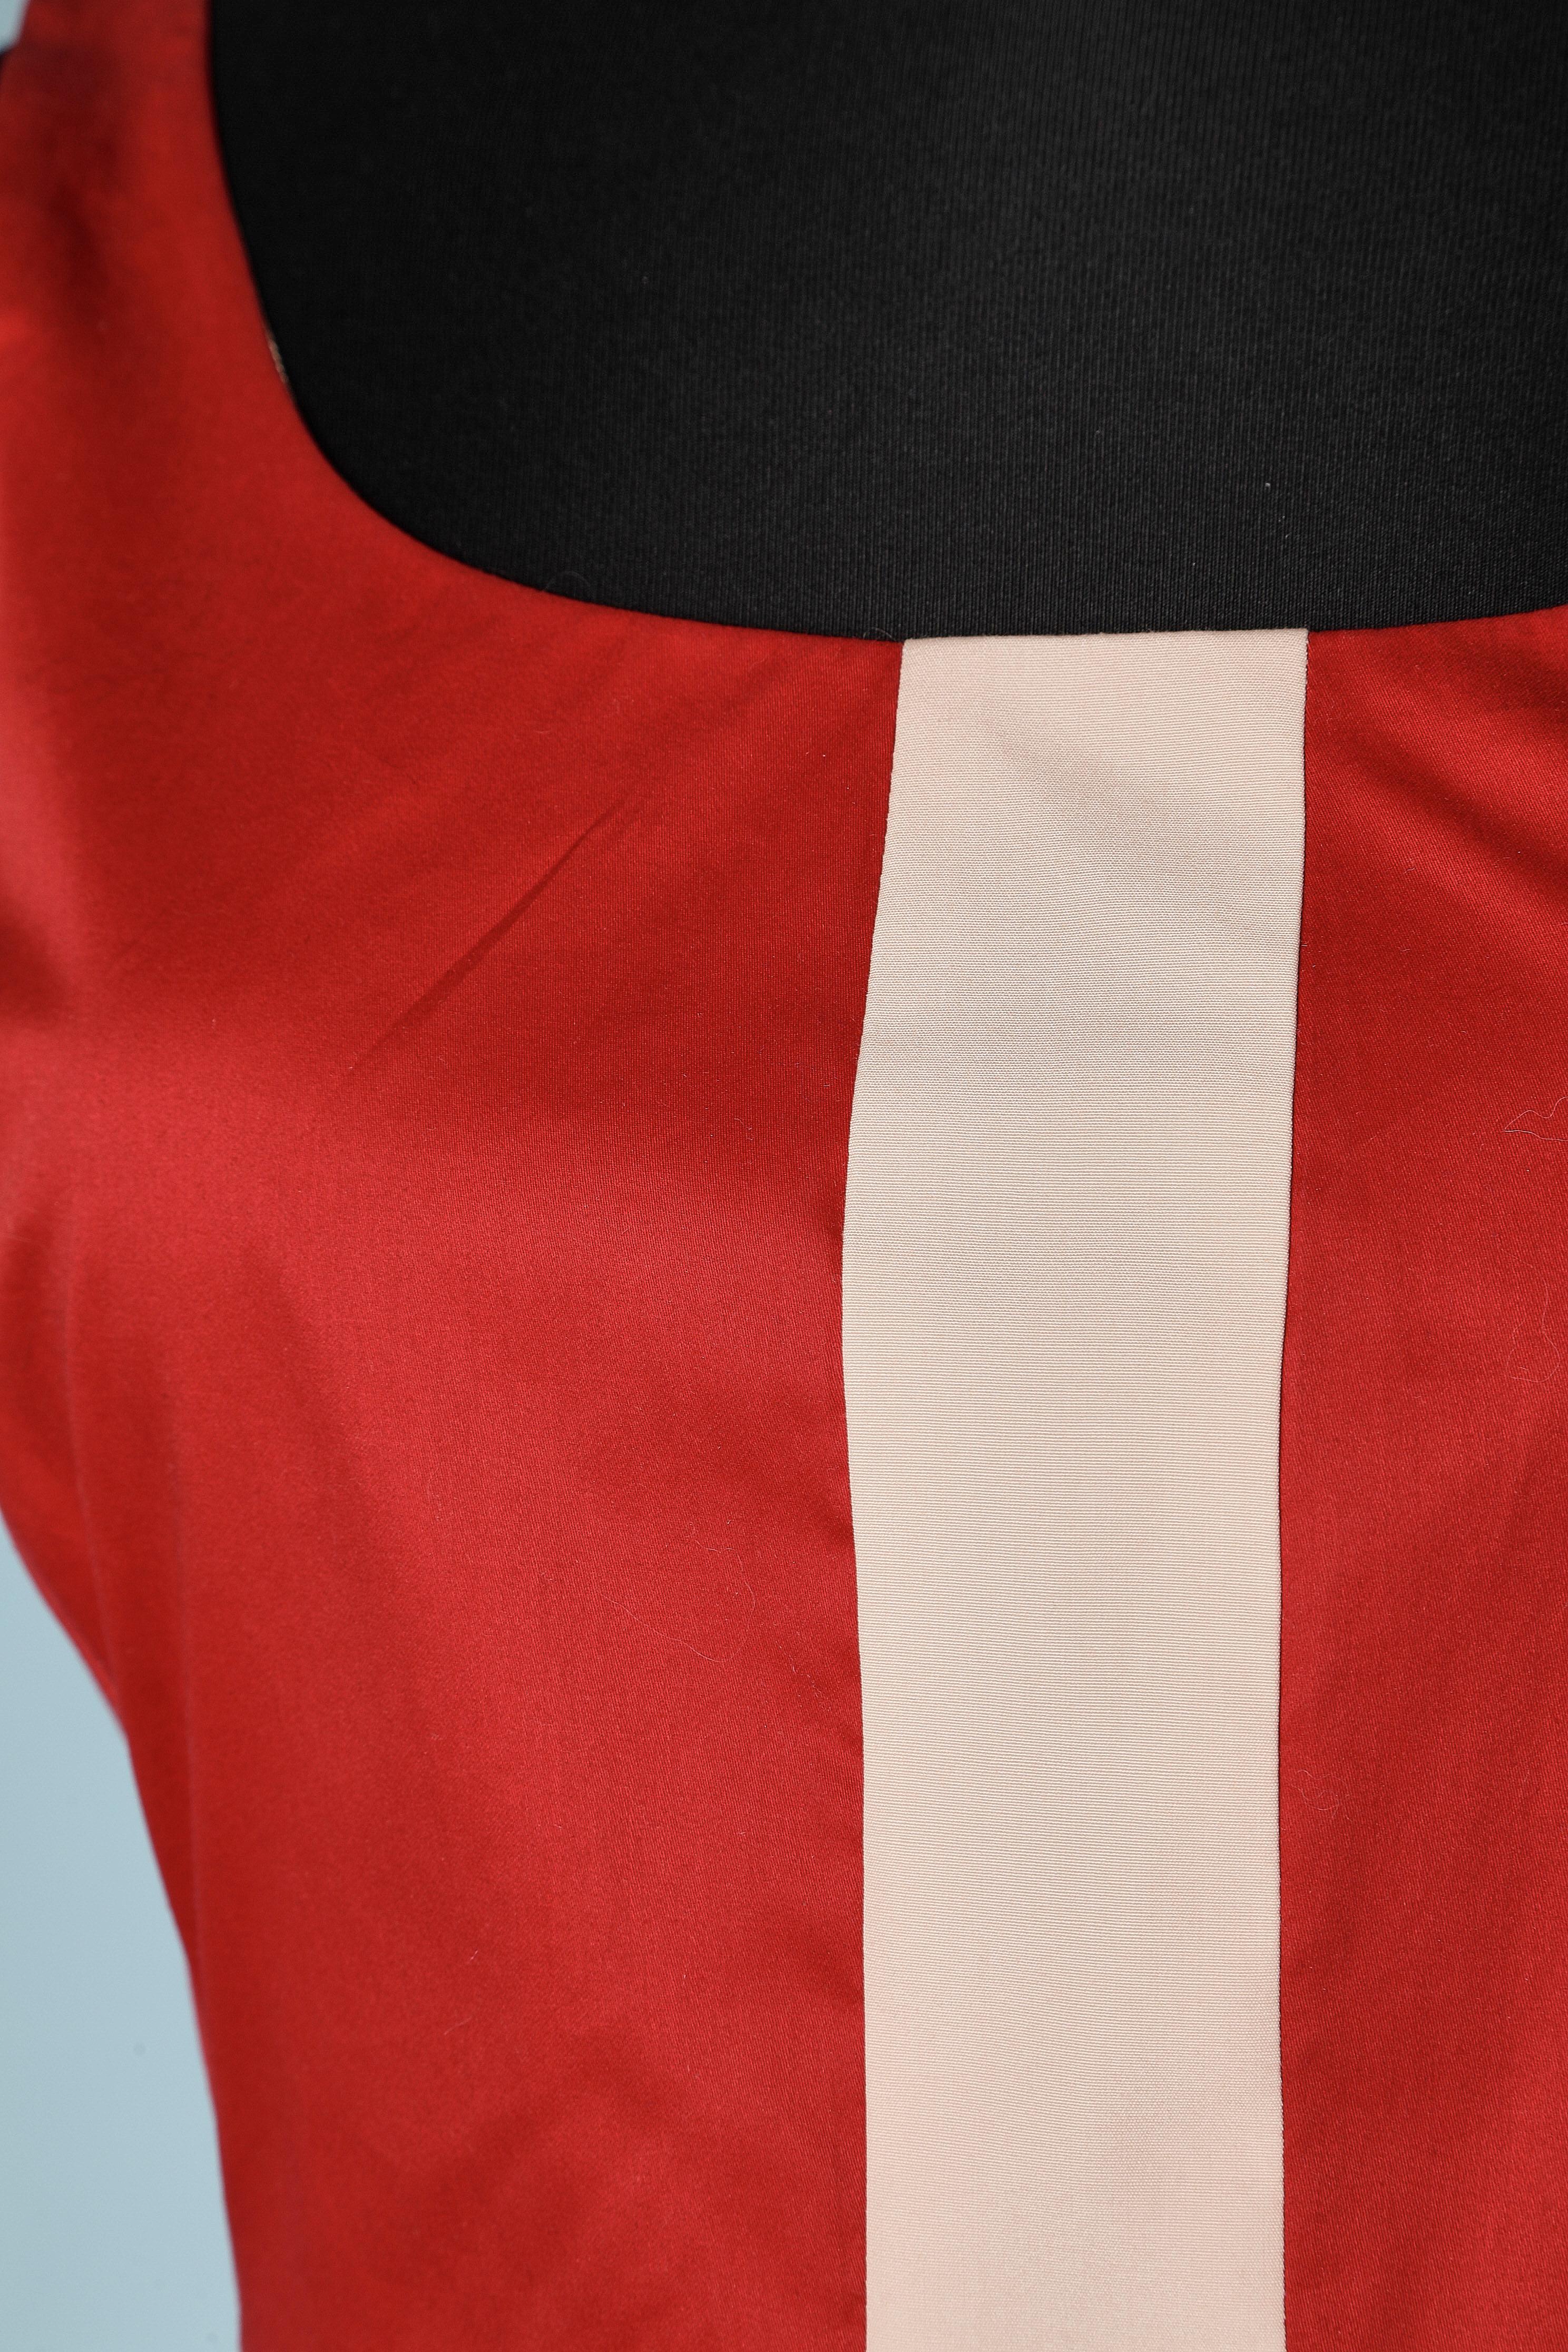 Robe de cocktail en coton rouge et rose pâle. Fermeture éclair au milieu du dos. Boutons recouverts de tissu et boutonnière. Doublure en rayonne. NOUVEAU 
Taille 42 (It) 38 (Fr) M 